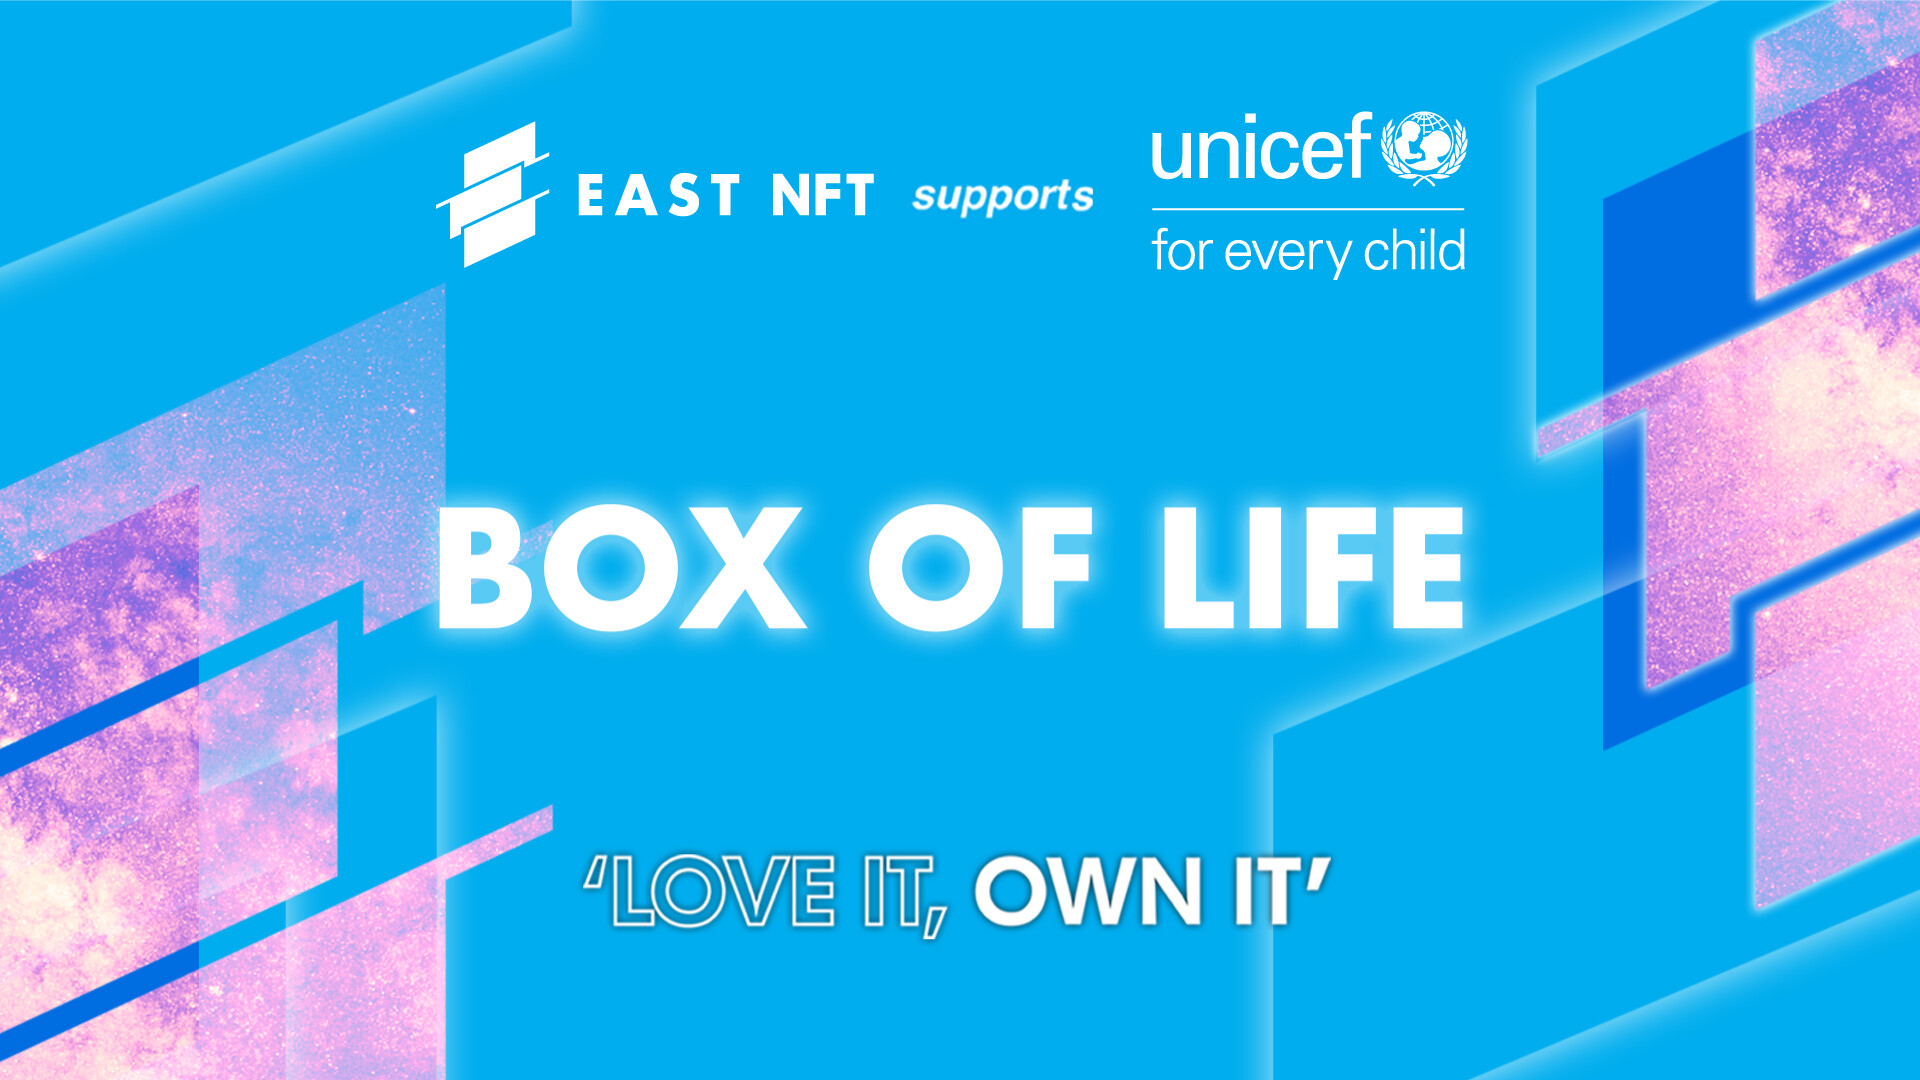 'Box of Life' หรือ "กล่องแห่งชีวิต" ผลงาน NFT ที่พร้อมนำรายได้มอบโอกาสในการรอดชีวิตให้กับเด็ก